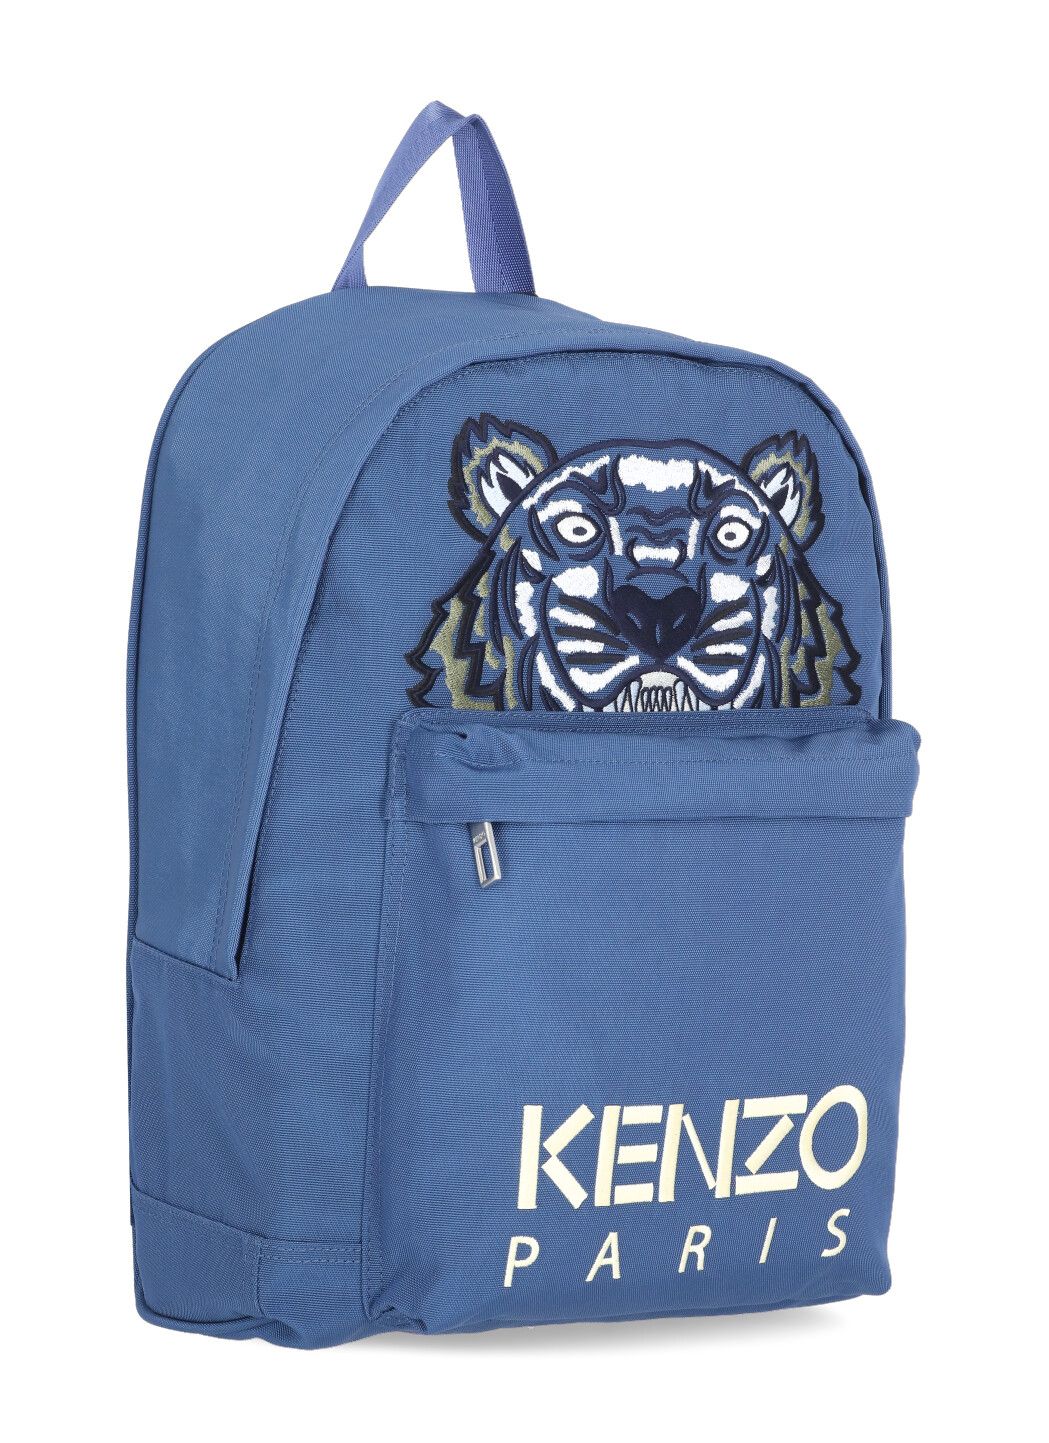 Kampus Tiger backpack